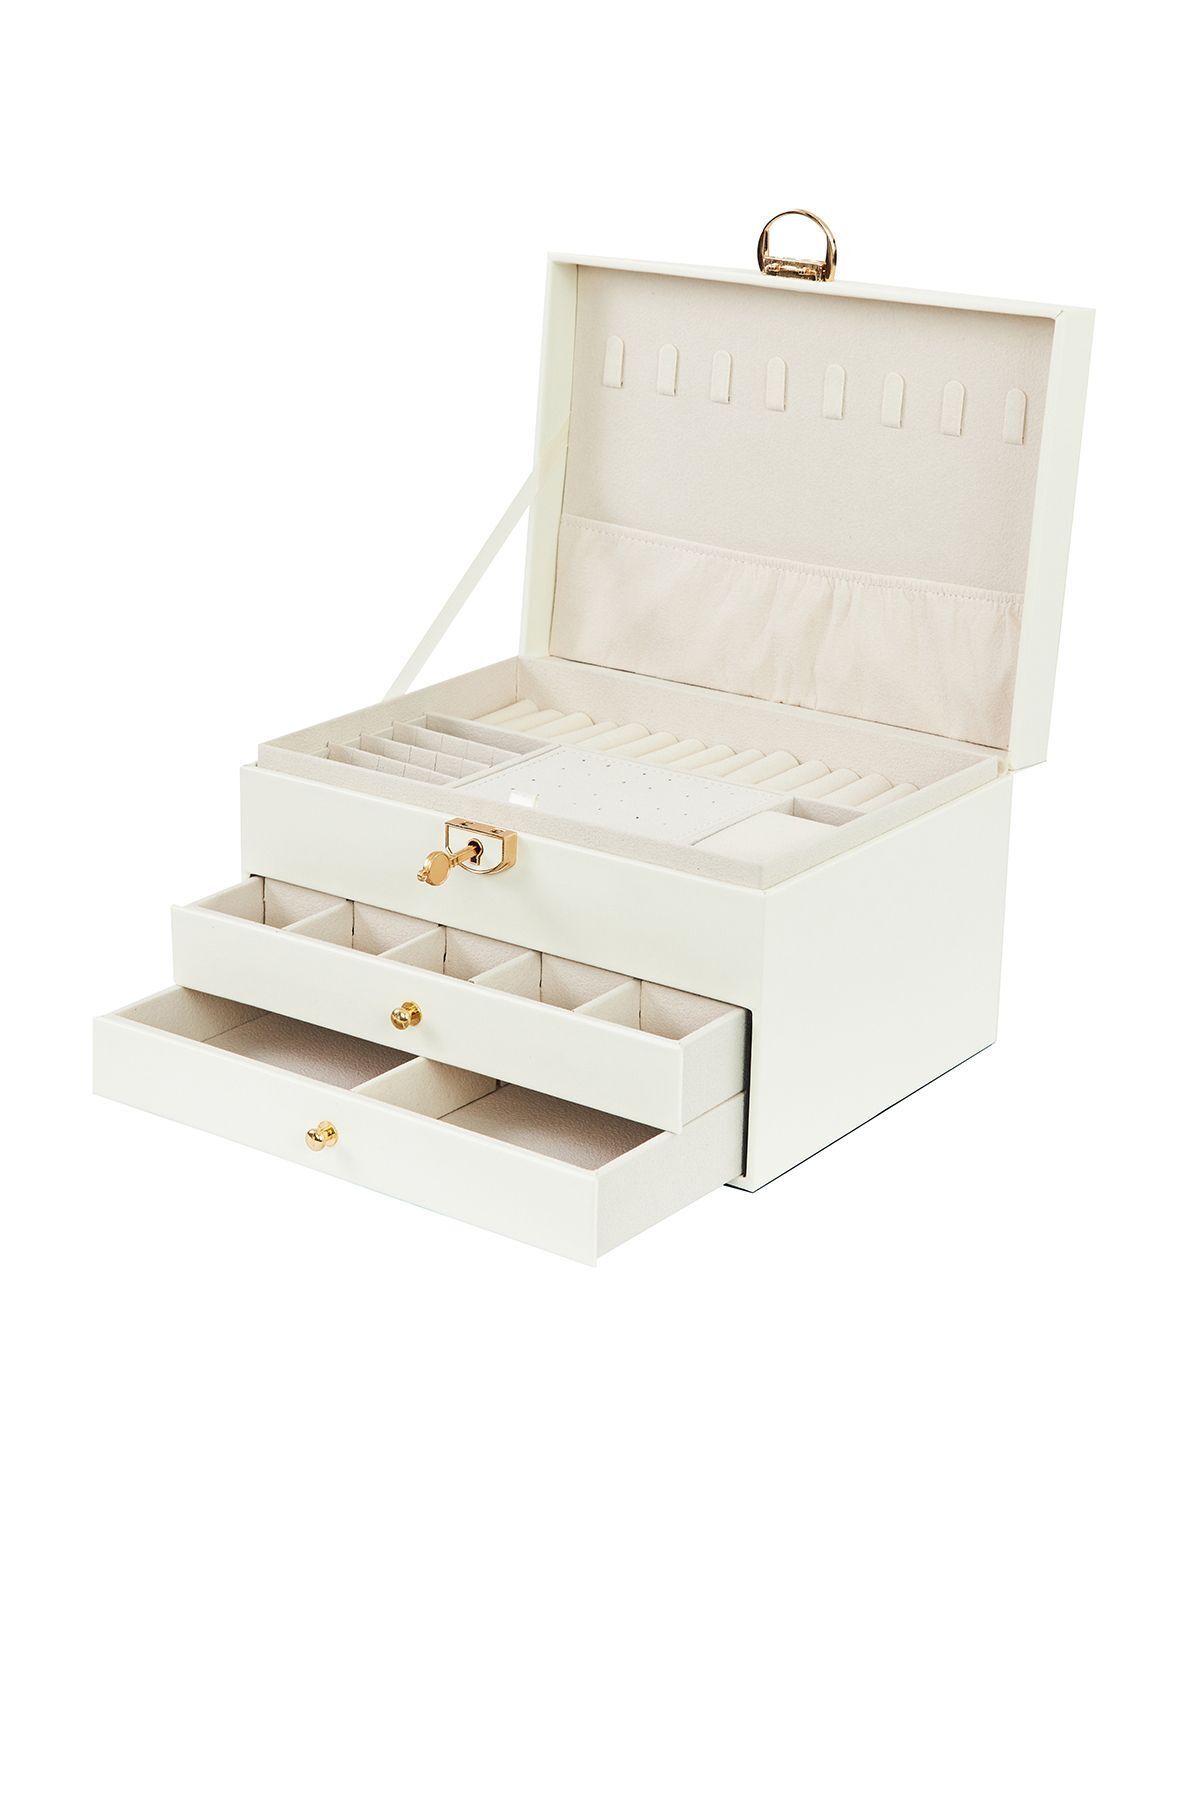 Ecrou Modern 2 Çekmeceli Takı Mücevher Kutusu Organizer Düzenleyici Beyaz 13 X 23 X 10 Cm